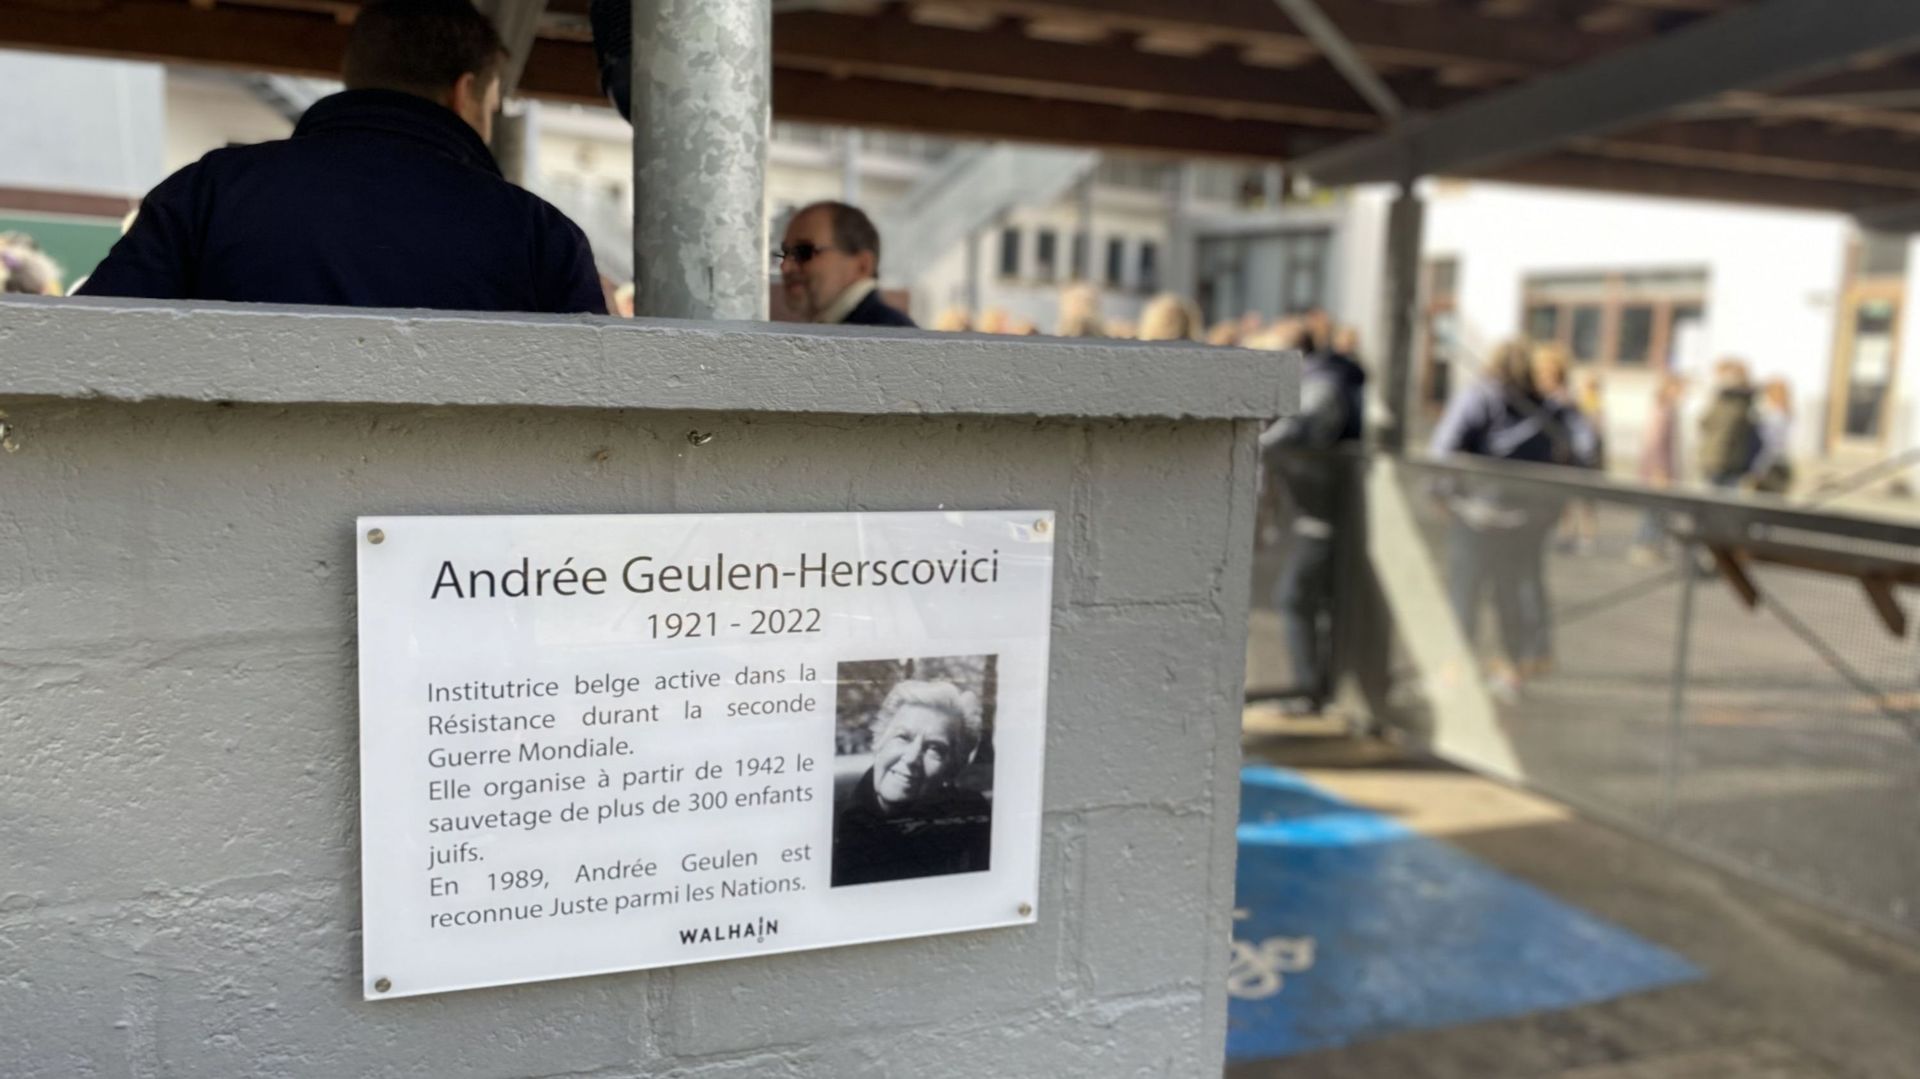 A l'entrée de l'école, une plaque explique brièvement qui était Andrée Geulen-Herscovici.